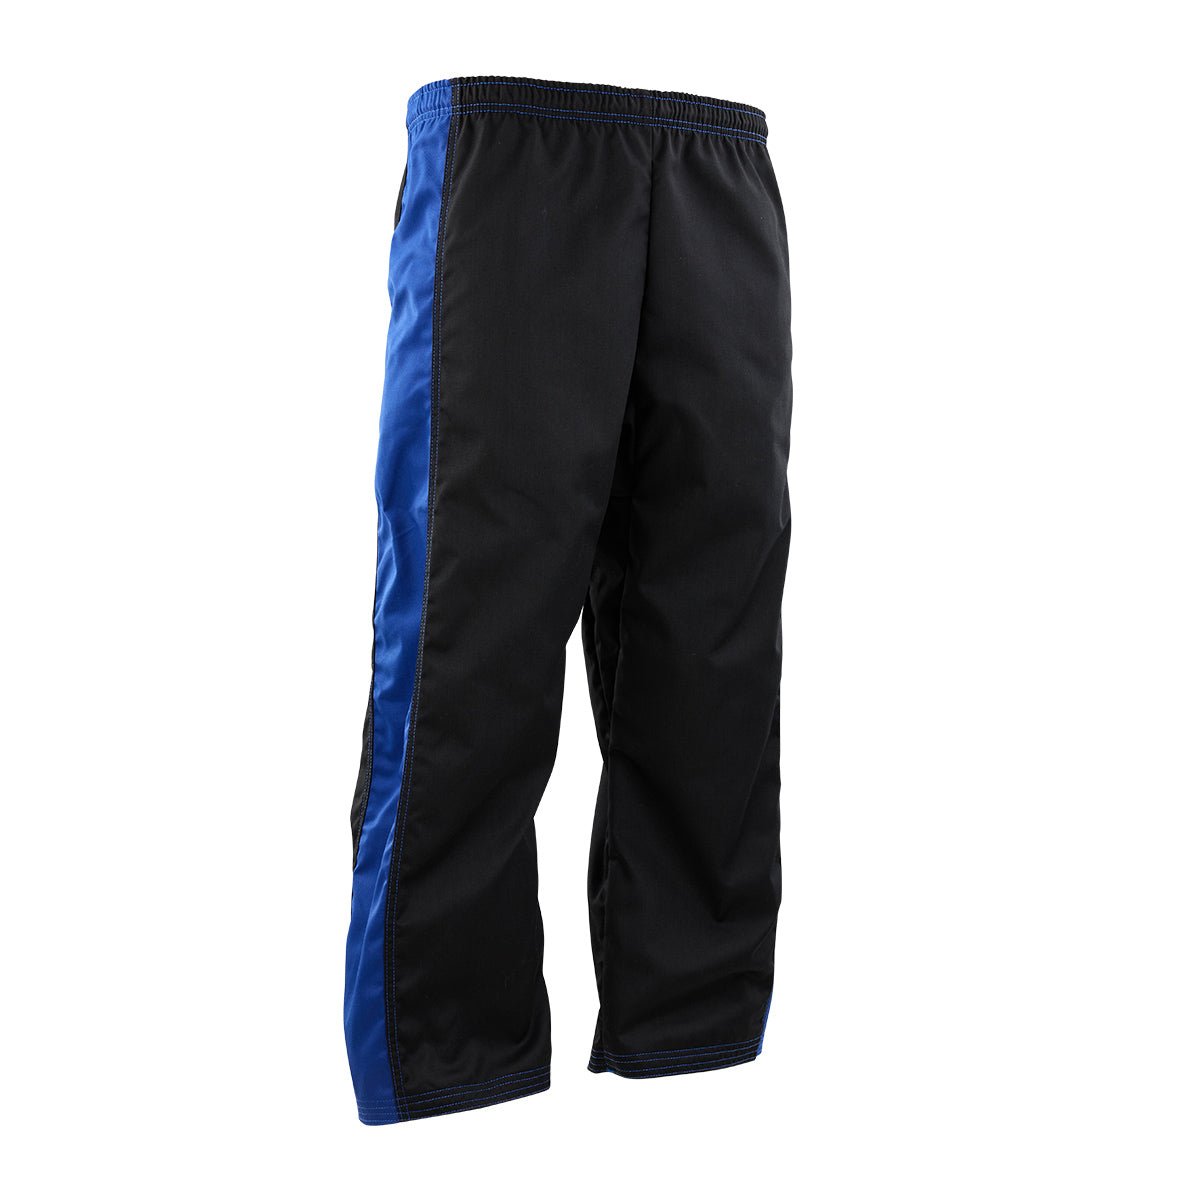 Tri-Color Program Uniform Pants Black/Blue/White